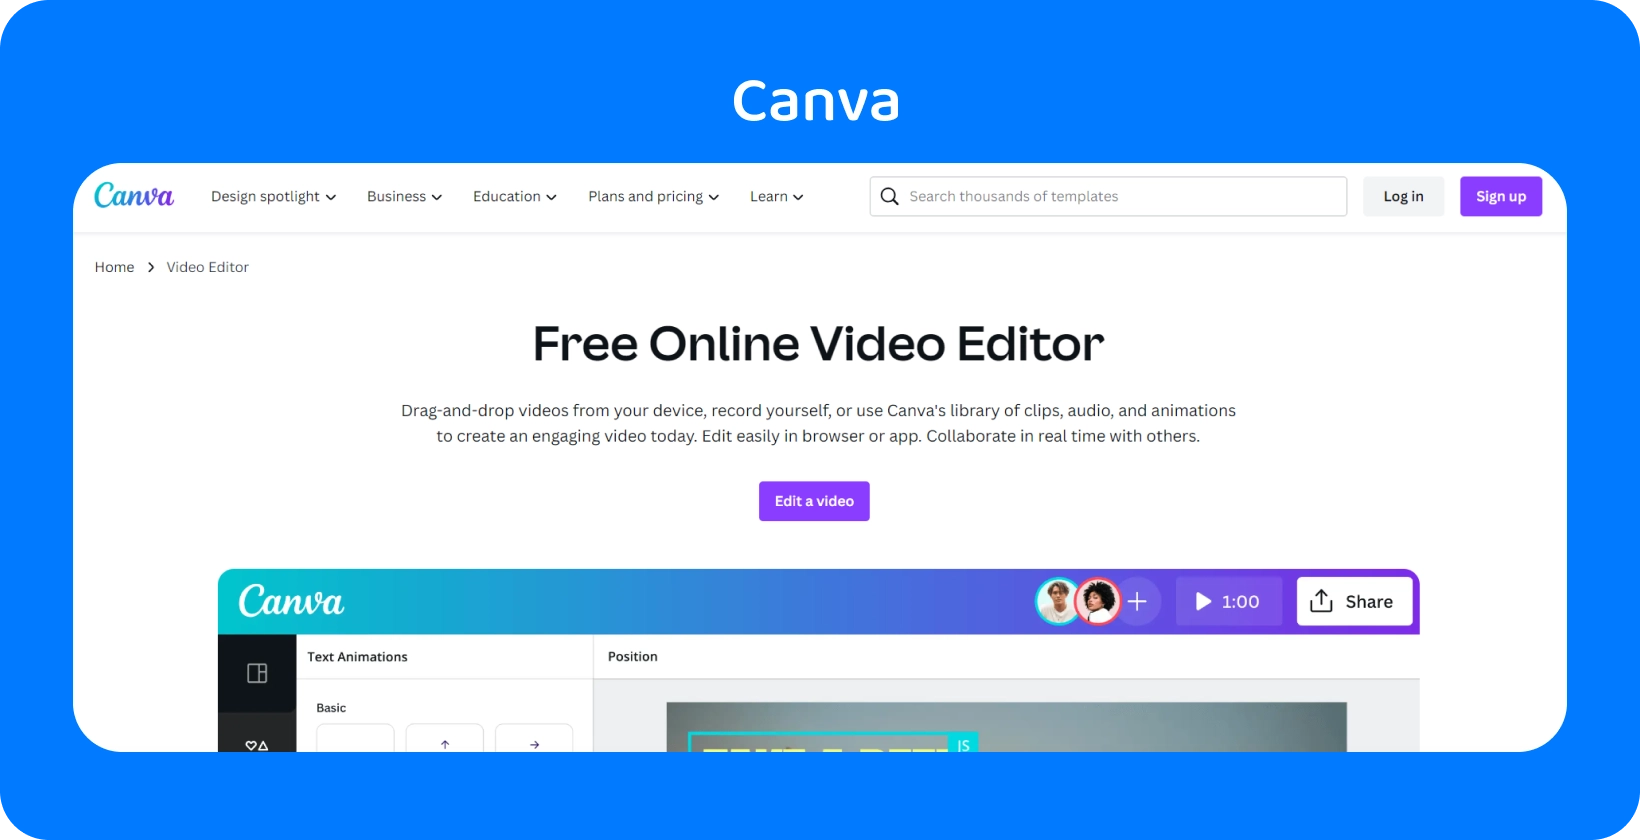 Die benutzerfreundliche Oberfläche von Canva wird mit verschiedenen Designoptionen für soziale Medien, Präsentationen, Videos und mehr angezeigt.